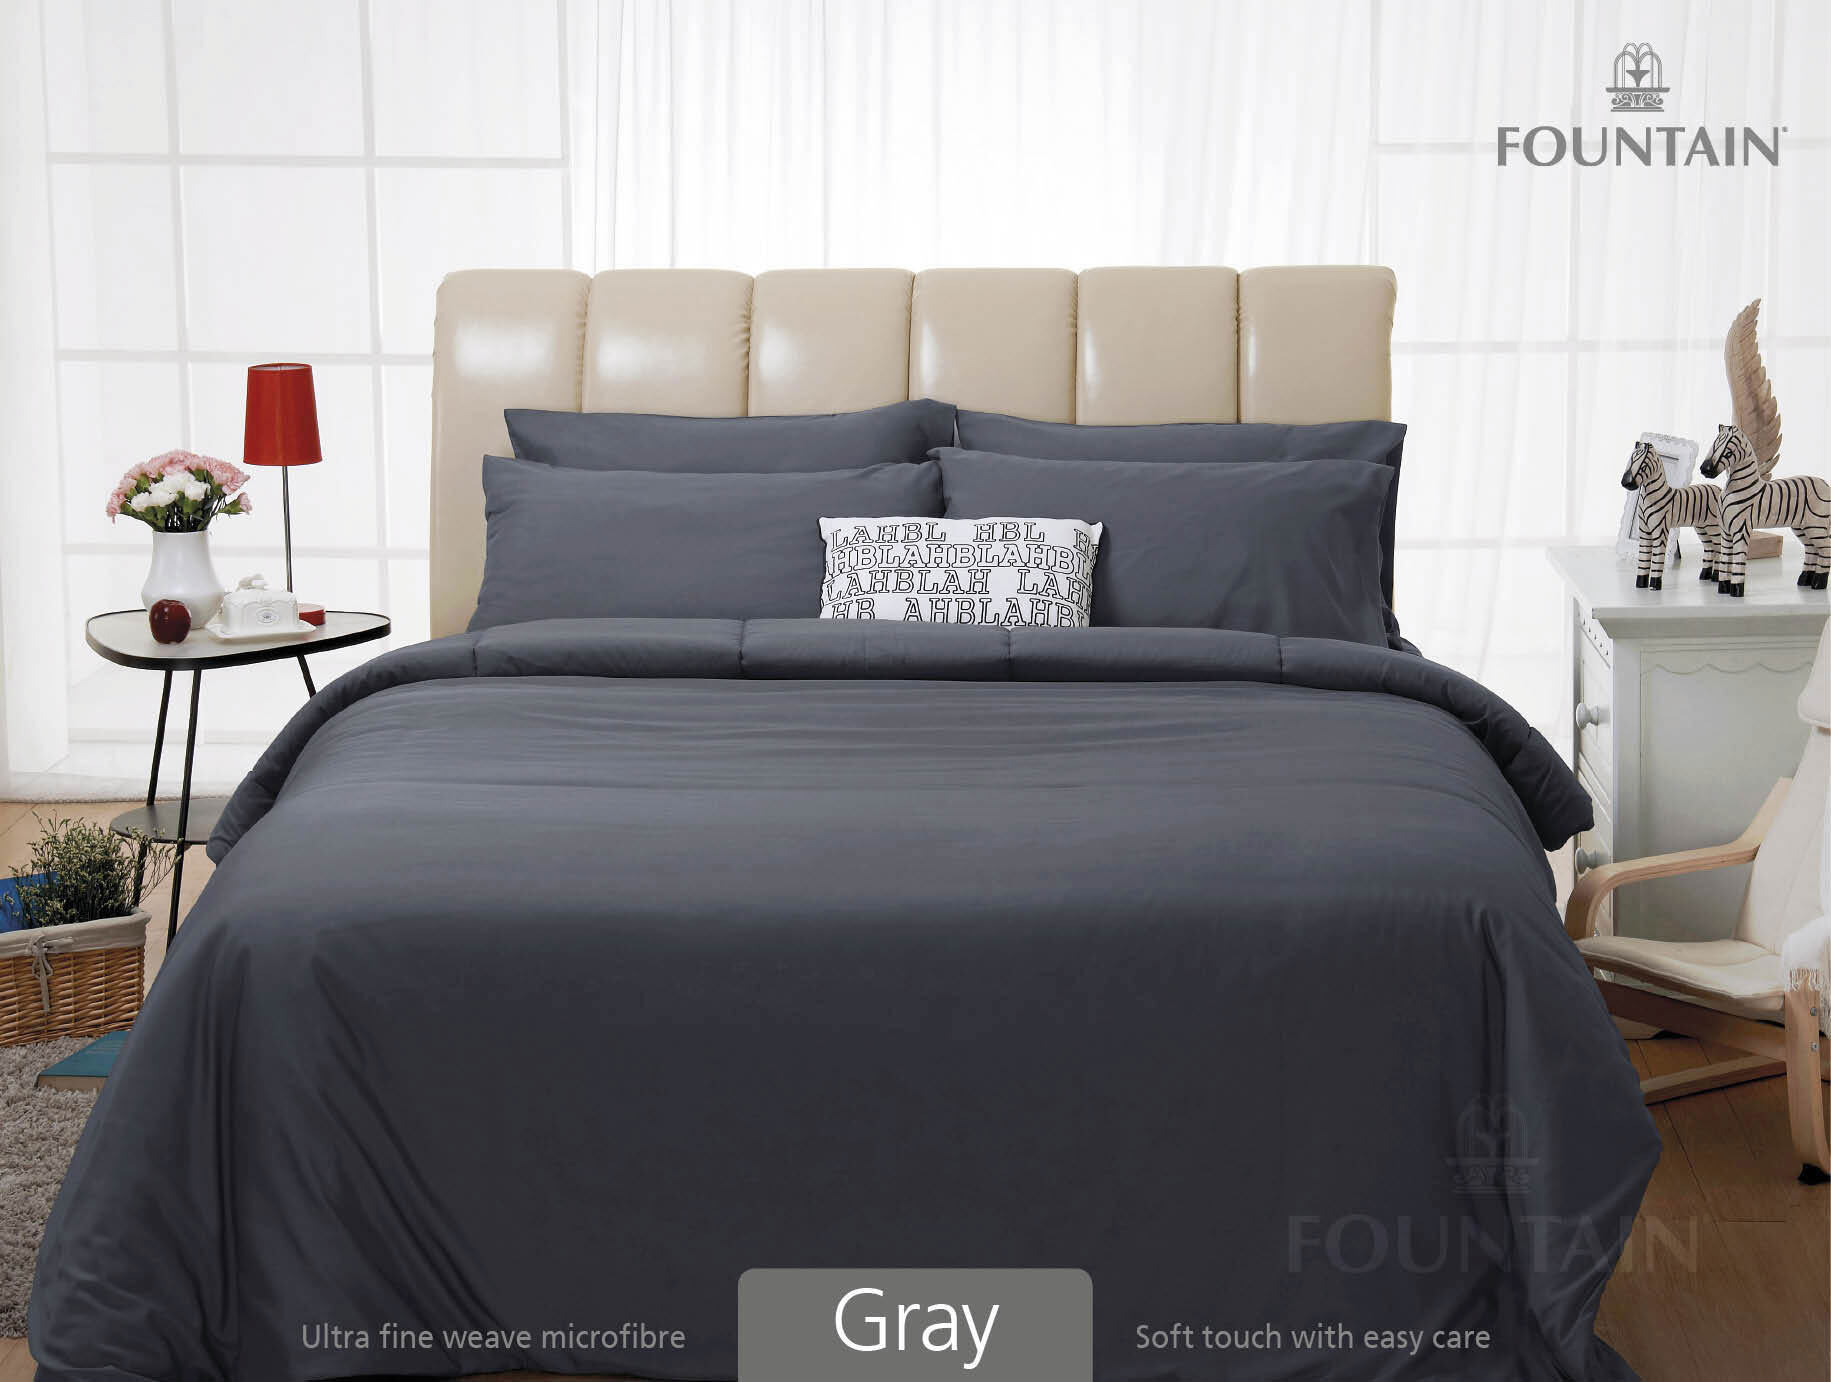 FOUNTAIN ผ้านวม + ชุดผ้าปู ผ้าปู ที่นอน แท้ 100% FTC สีพื้น เขียว Green Gray เทา ขนาด 3.5 5 6ฟุต ชุดเครื่องนอน ผ้านวม ผ้าปูที่นอน wonderful bedding  สี → Gray2ขนาดสินค้า 3.5 ฟุต